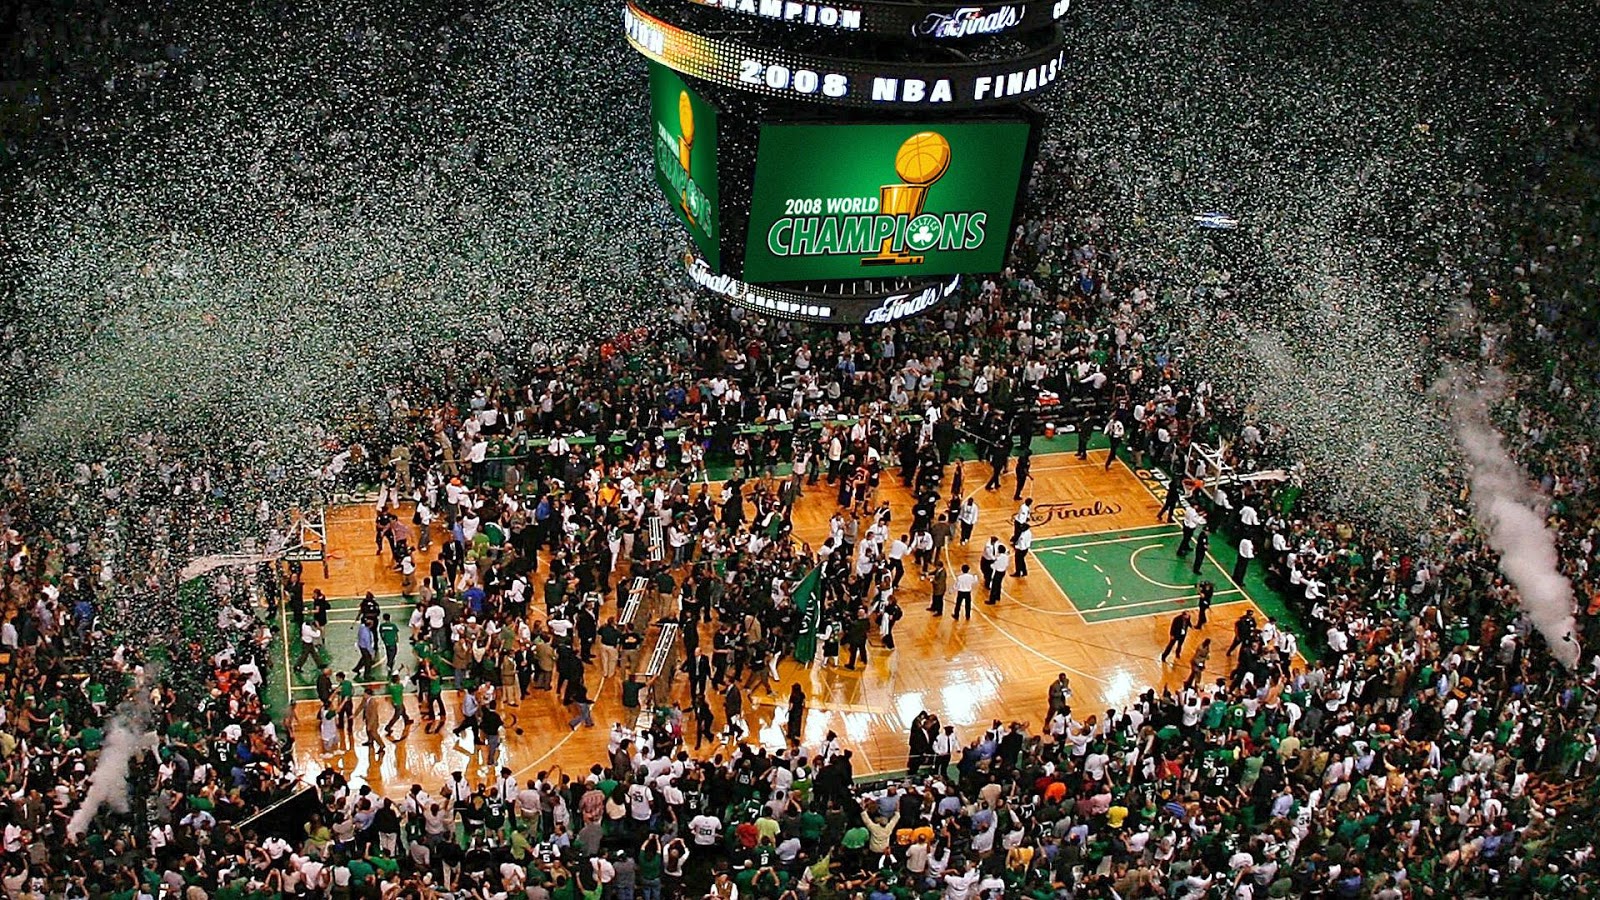 DAR Sports: 2008 NBA Finals- Lakers vs Celtics - DefineARevolution.com1600 x 900